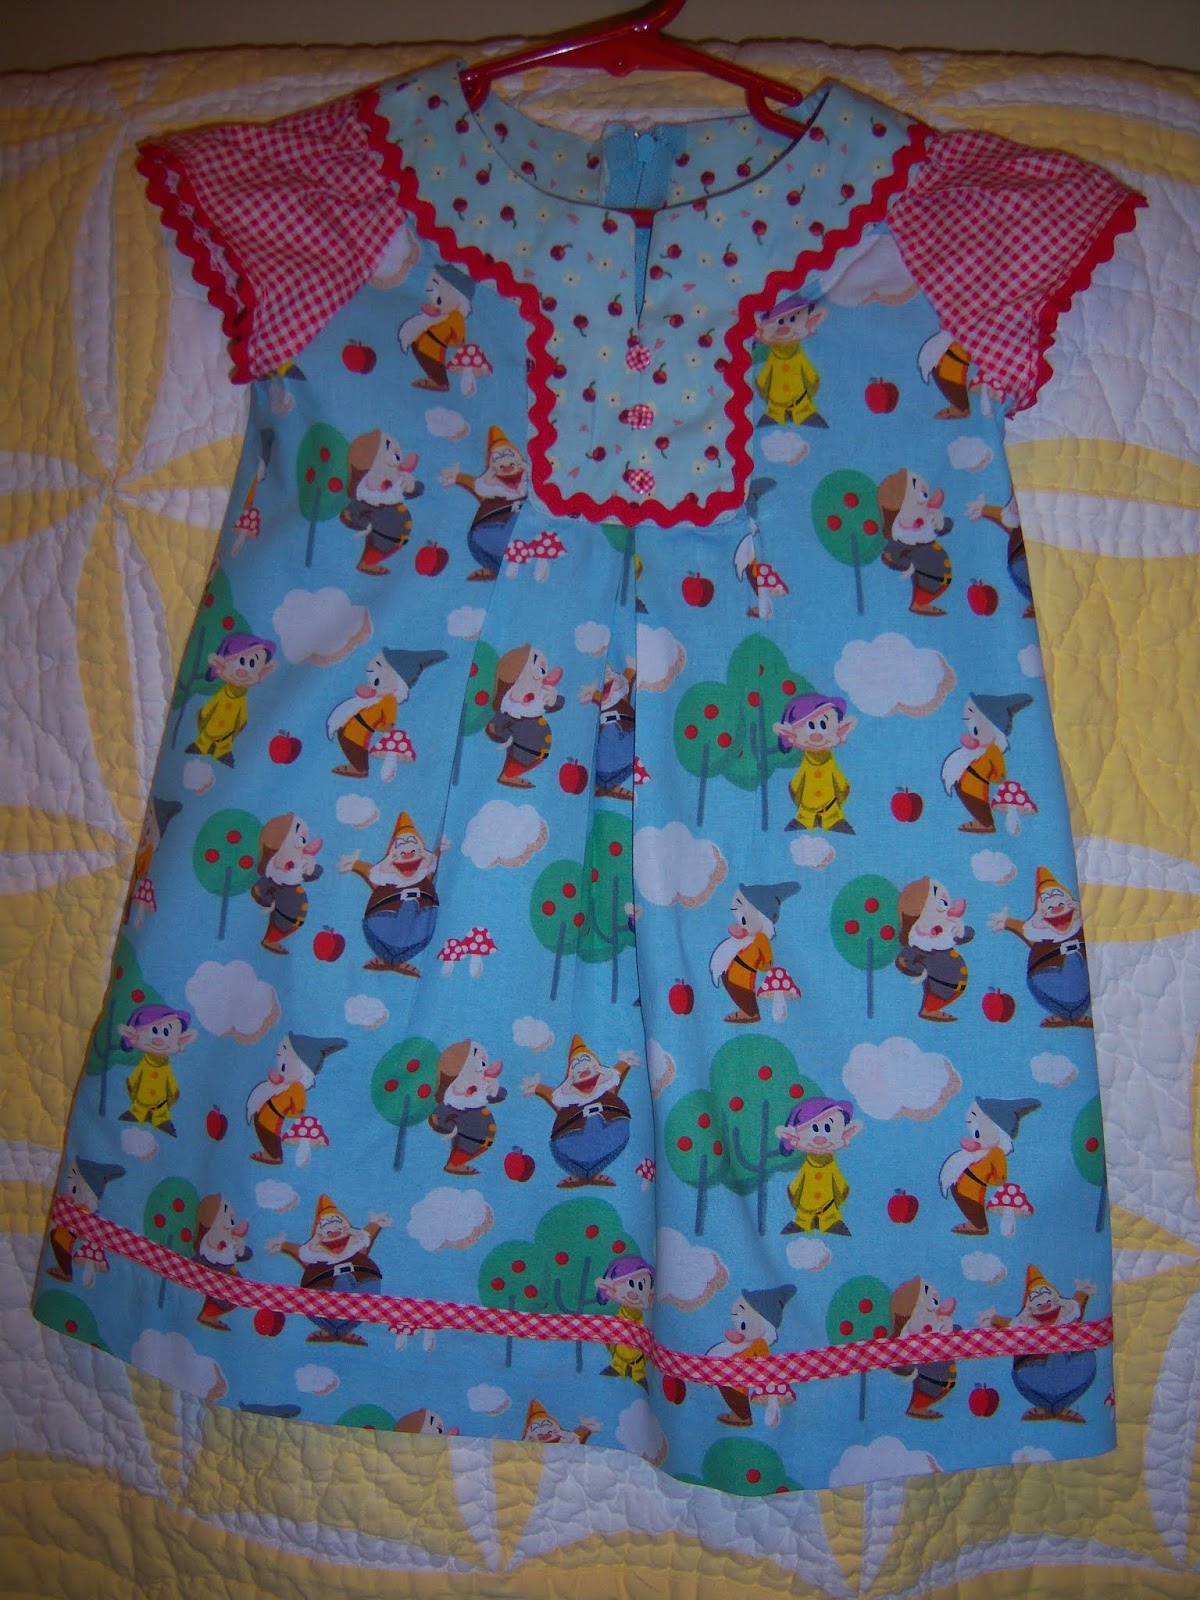 Scrap-n-Sew Granny: Seven Dwarfs Dress and Doll Dress